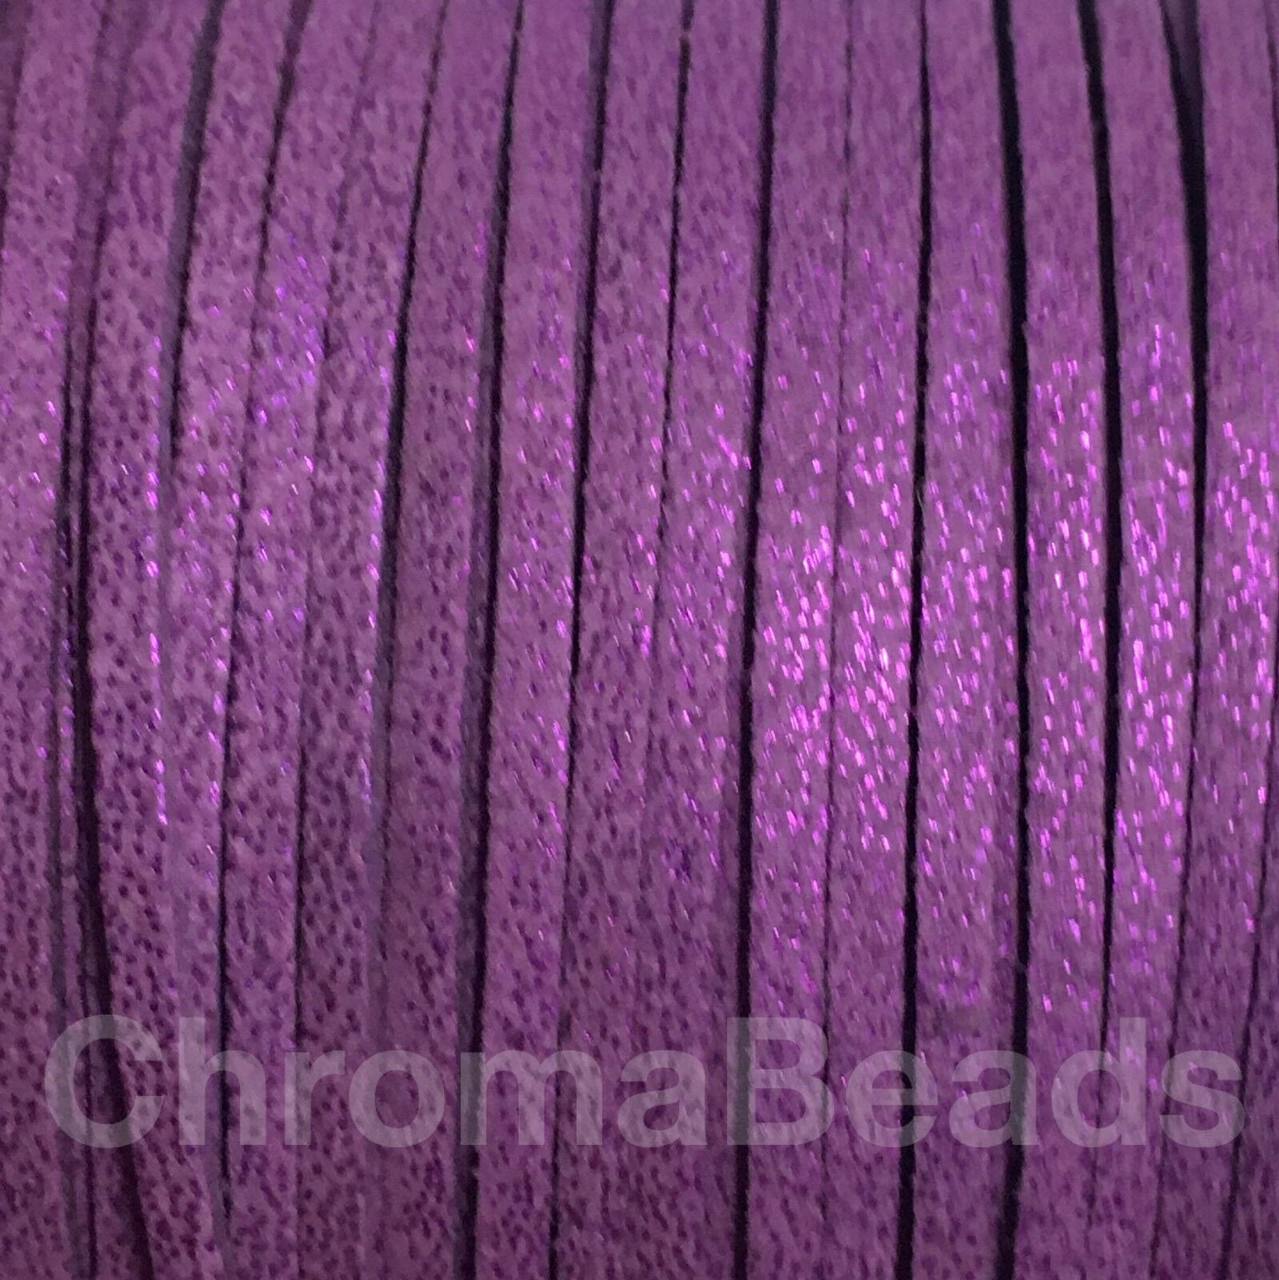 Faux Suede Cord Reel - approx 90m, 3mm wide [Purple Glitter]